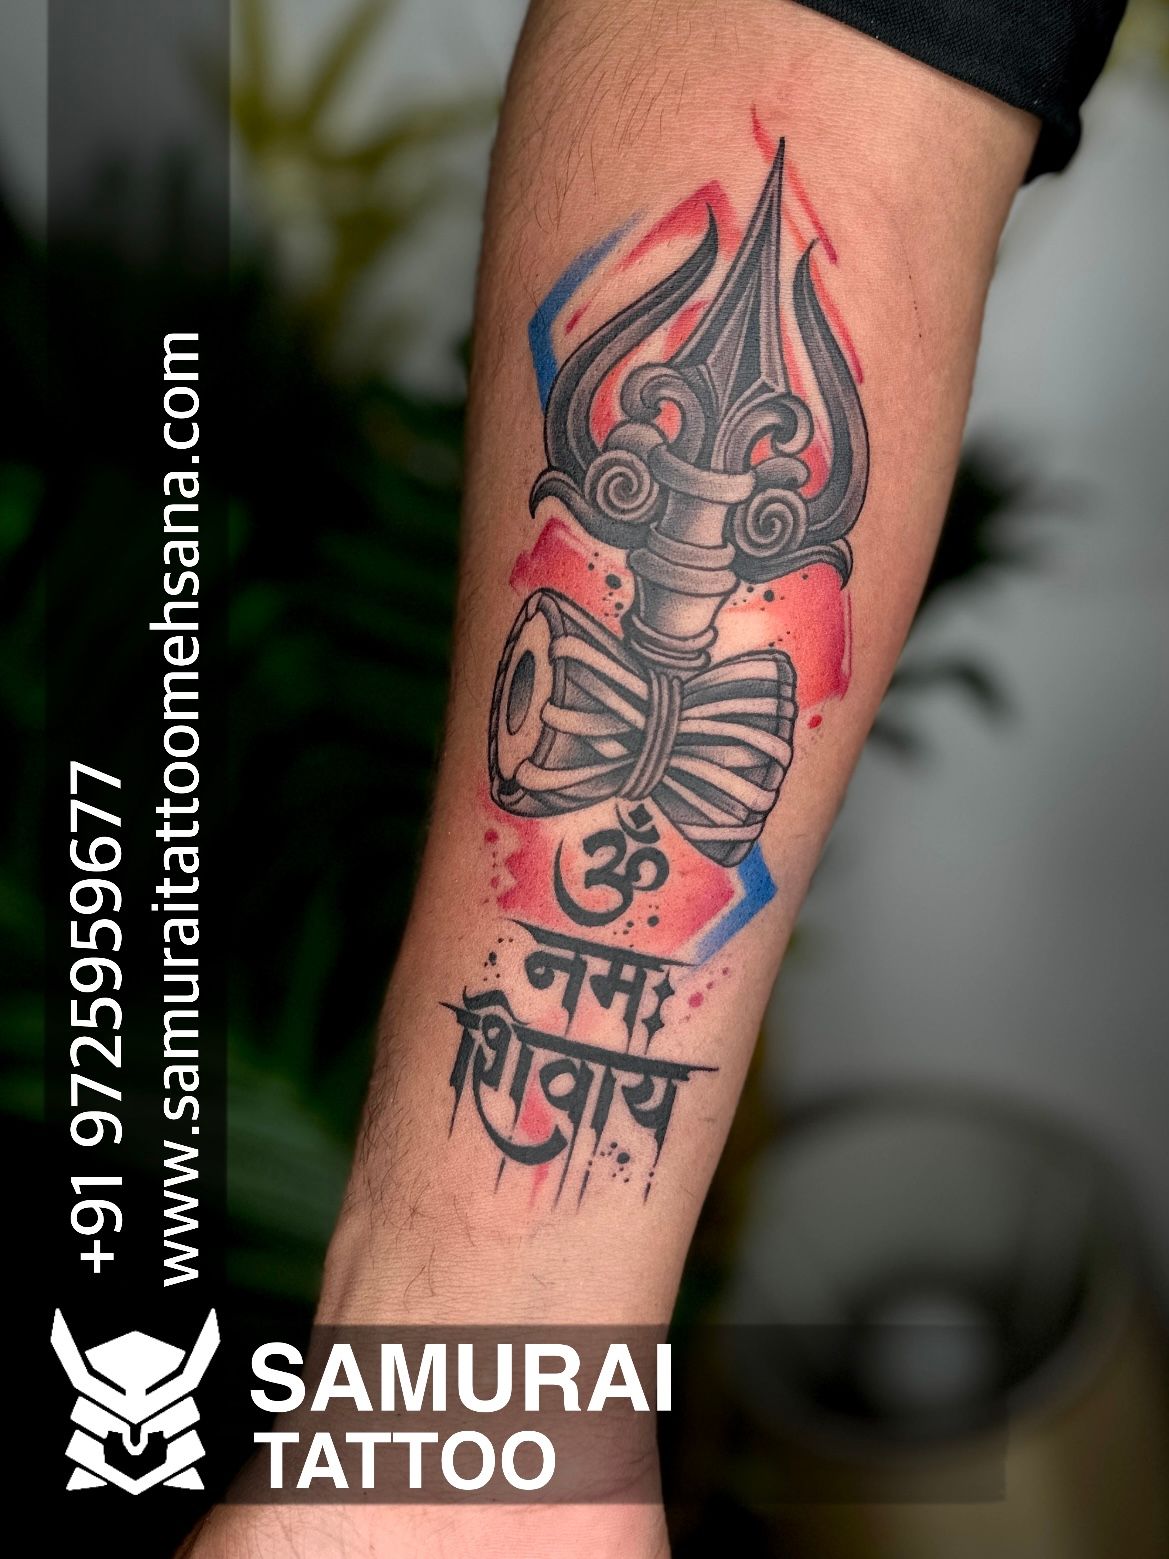 Lilly's Fine Tattoo - Lord Shiva Tattoo by Deepak Vetal at Lilly's Fine  Tattoo #lordshivatattoo #shivsankar #bholenath🙏 #tatt #tattooink  #deepakvetal #lillysfinetattoo too #mumbai | Facebook